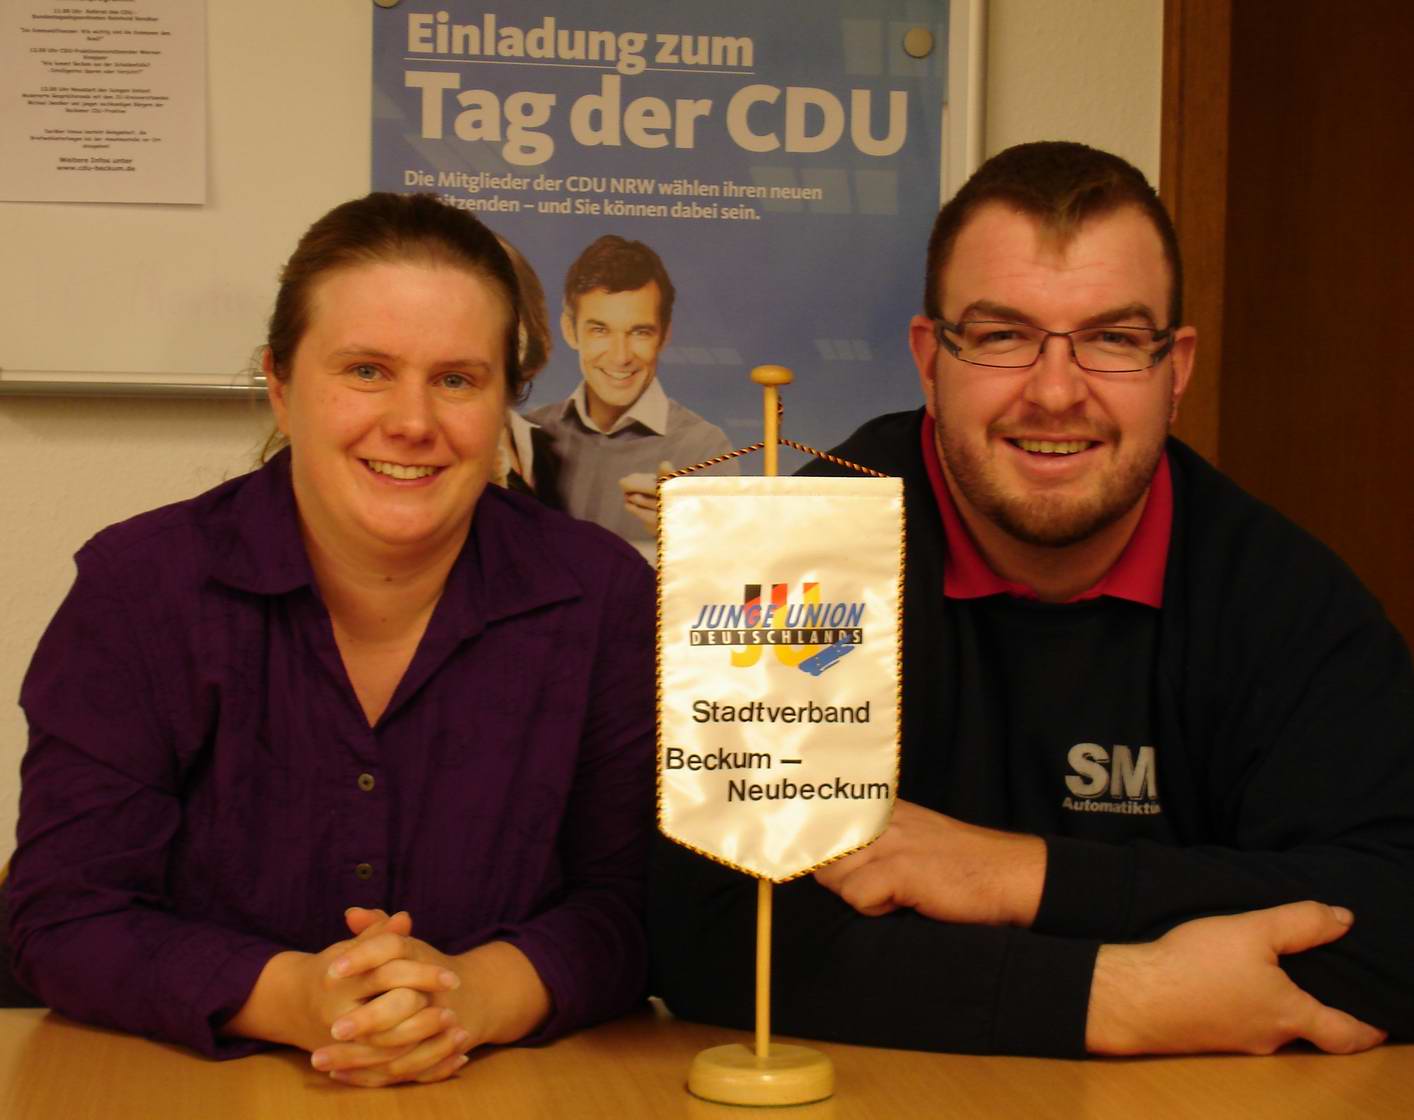 Sandra Maier und Matthias Wanger freuen sich auf die erste öffentliche Präsentation am 